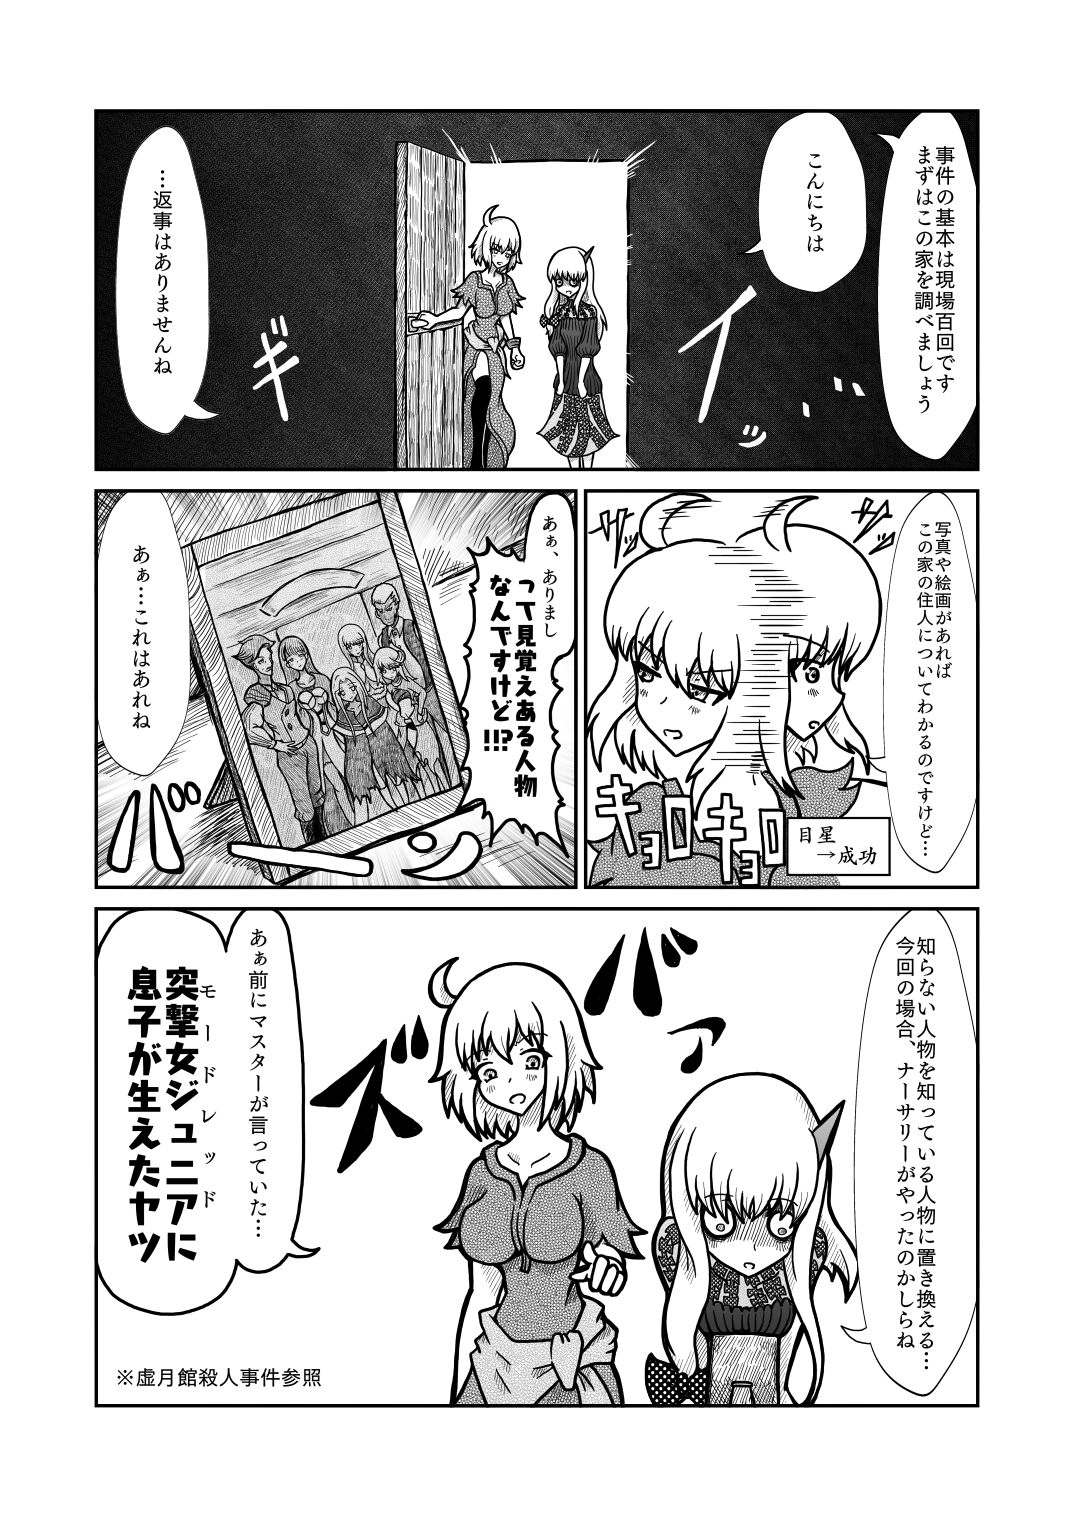 [Shigato] Jeanne x Lavi Dunwich Kai Kikou (Fate/Grand Order, Cthulhu Mythos) [Digital] 16